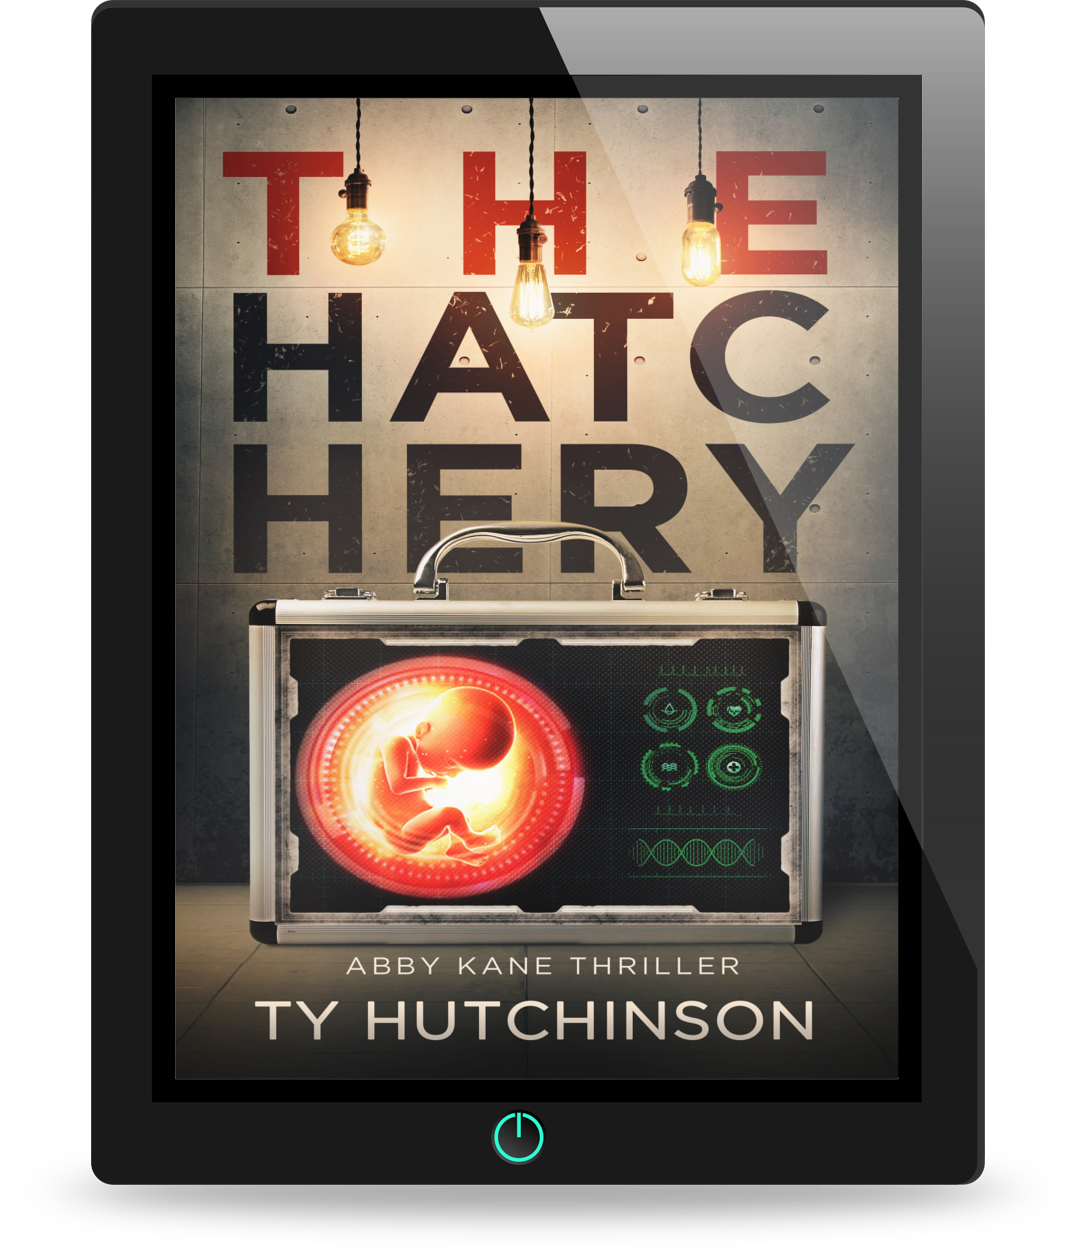 The Hatchery